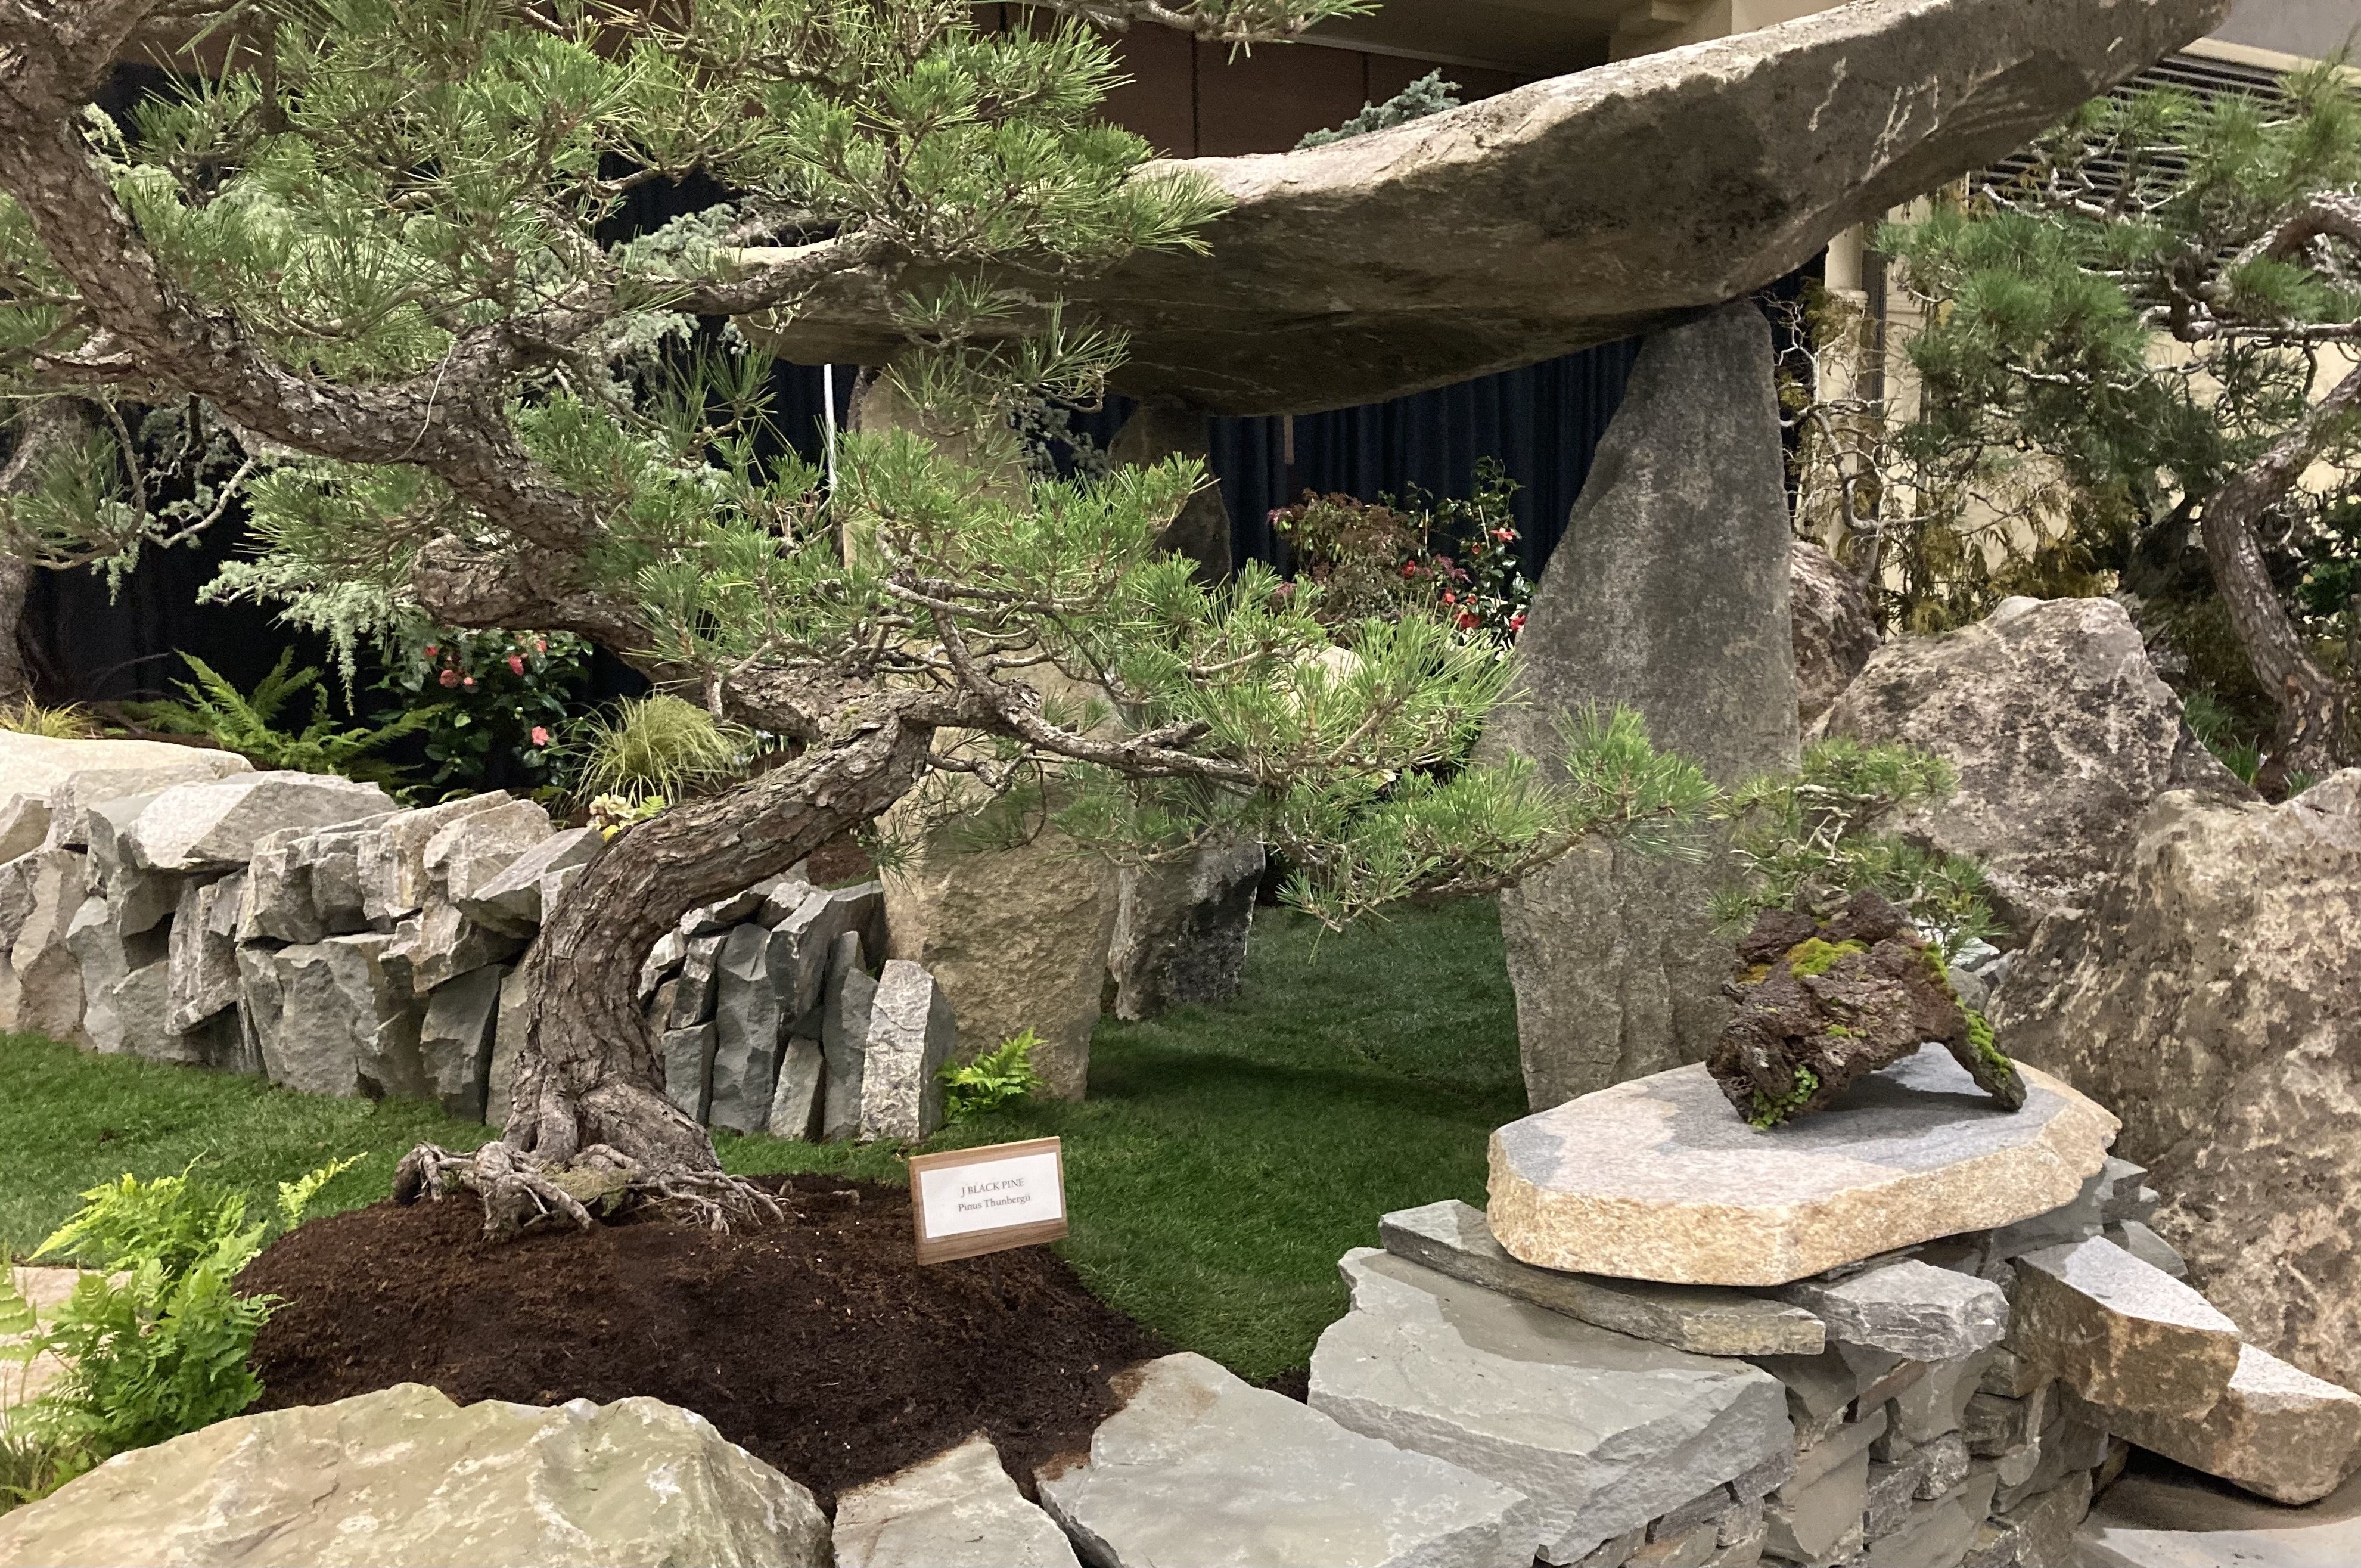 A rock garden and bonsai display.